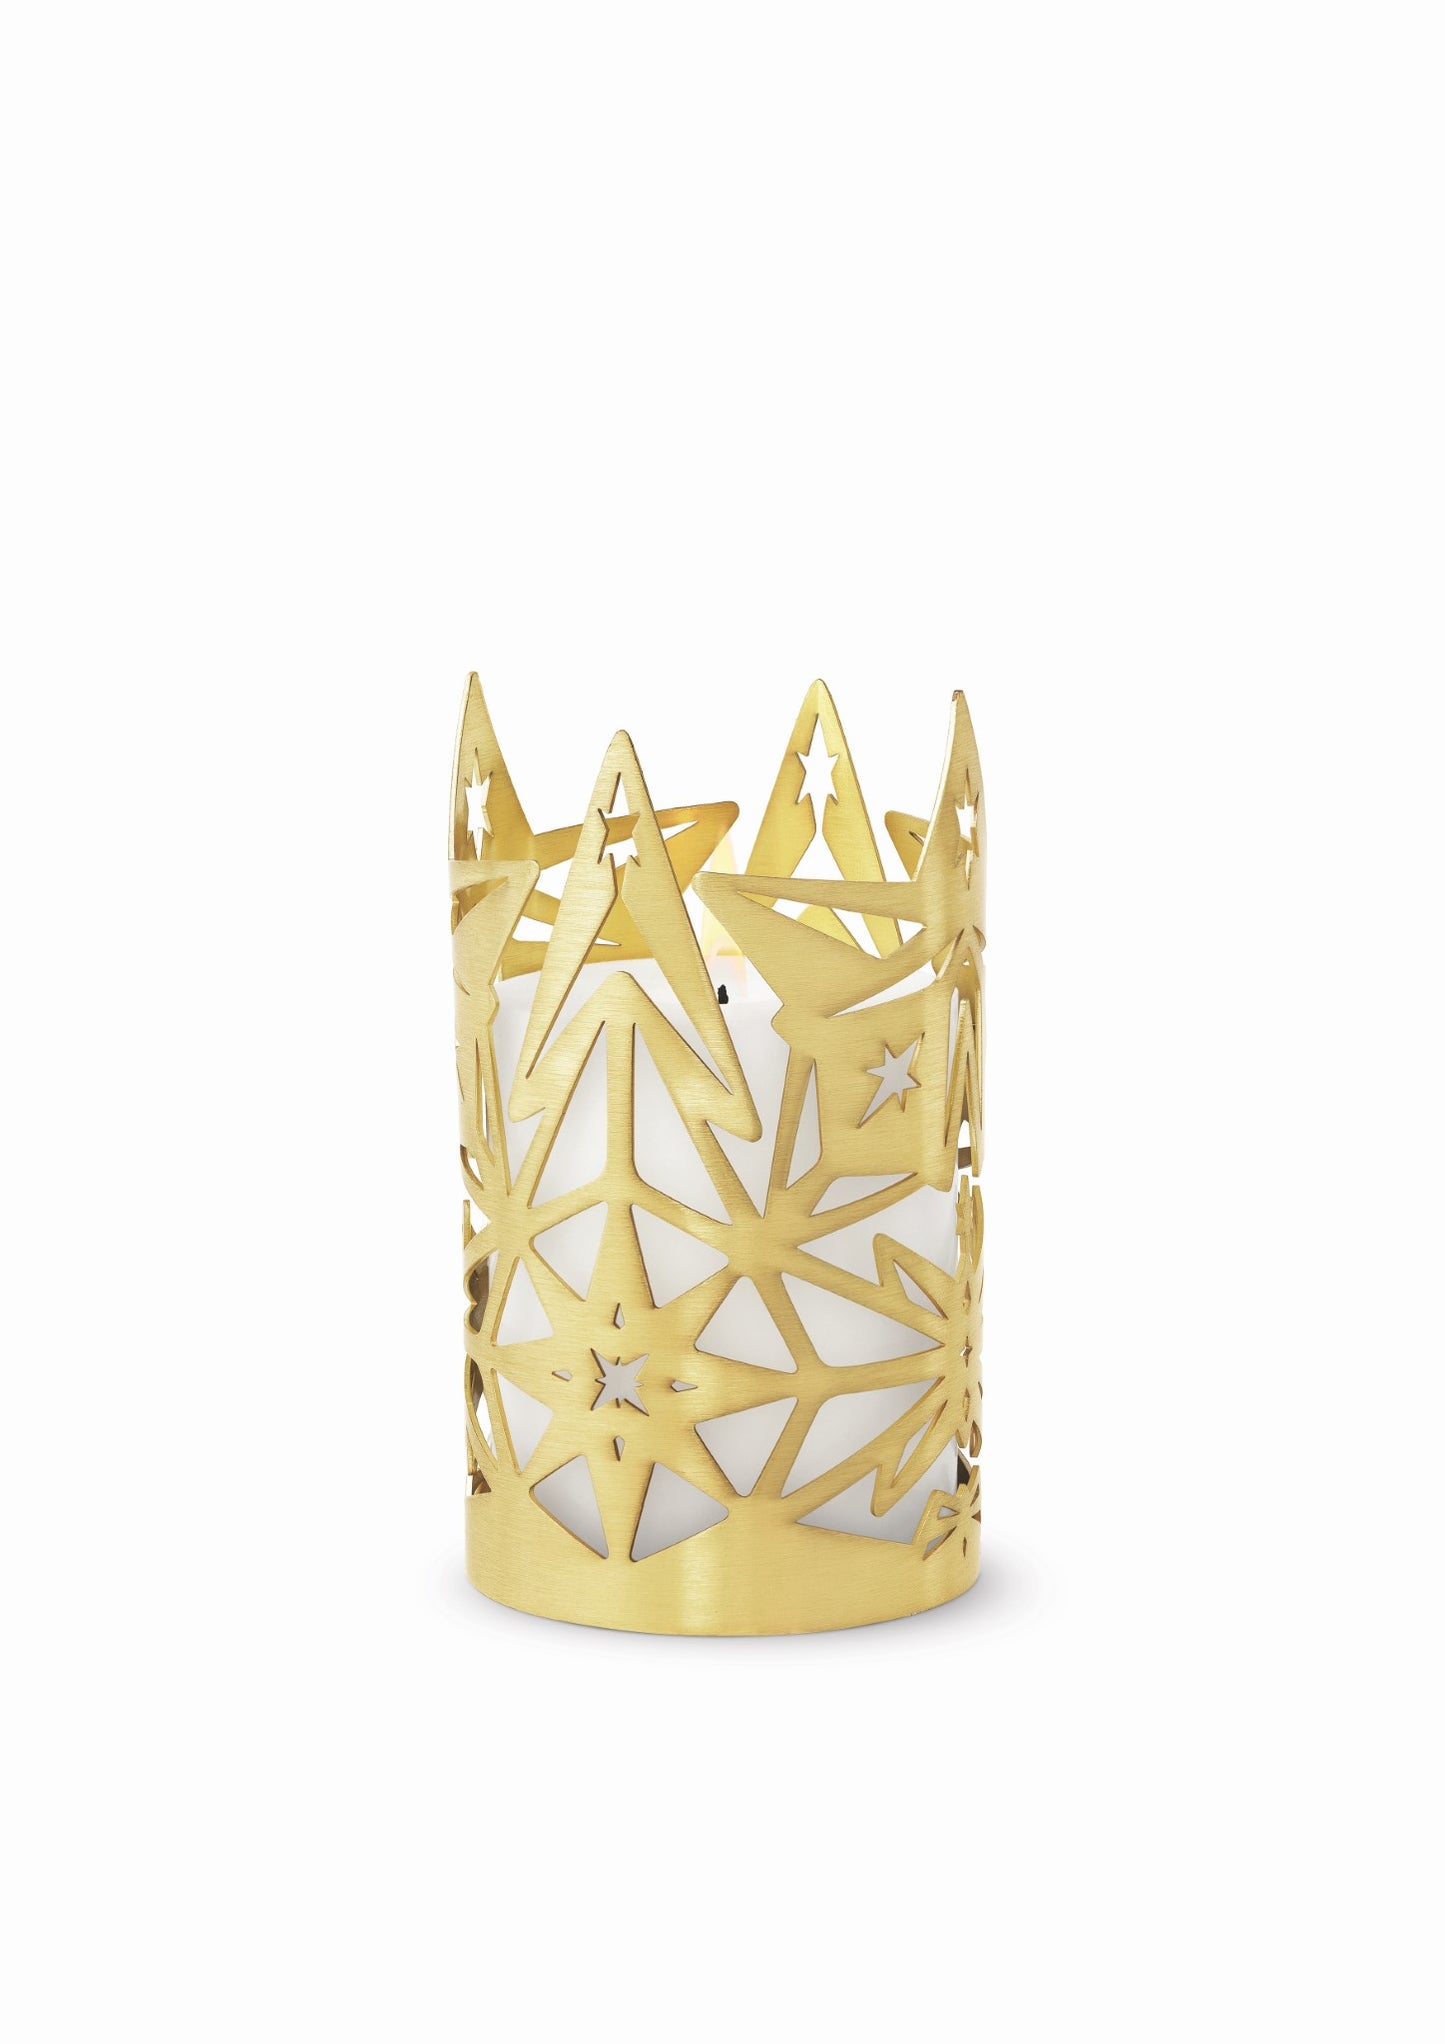 Karen Blixen Candleholder Gold - Small